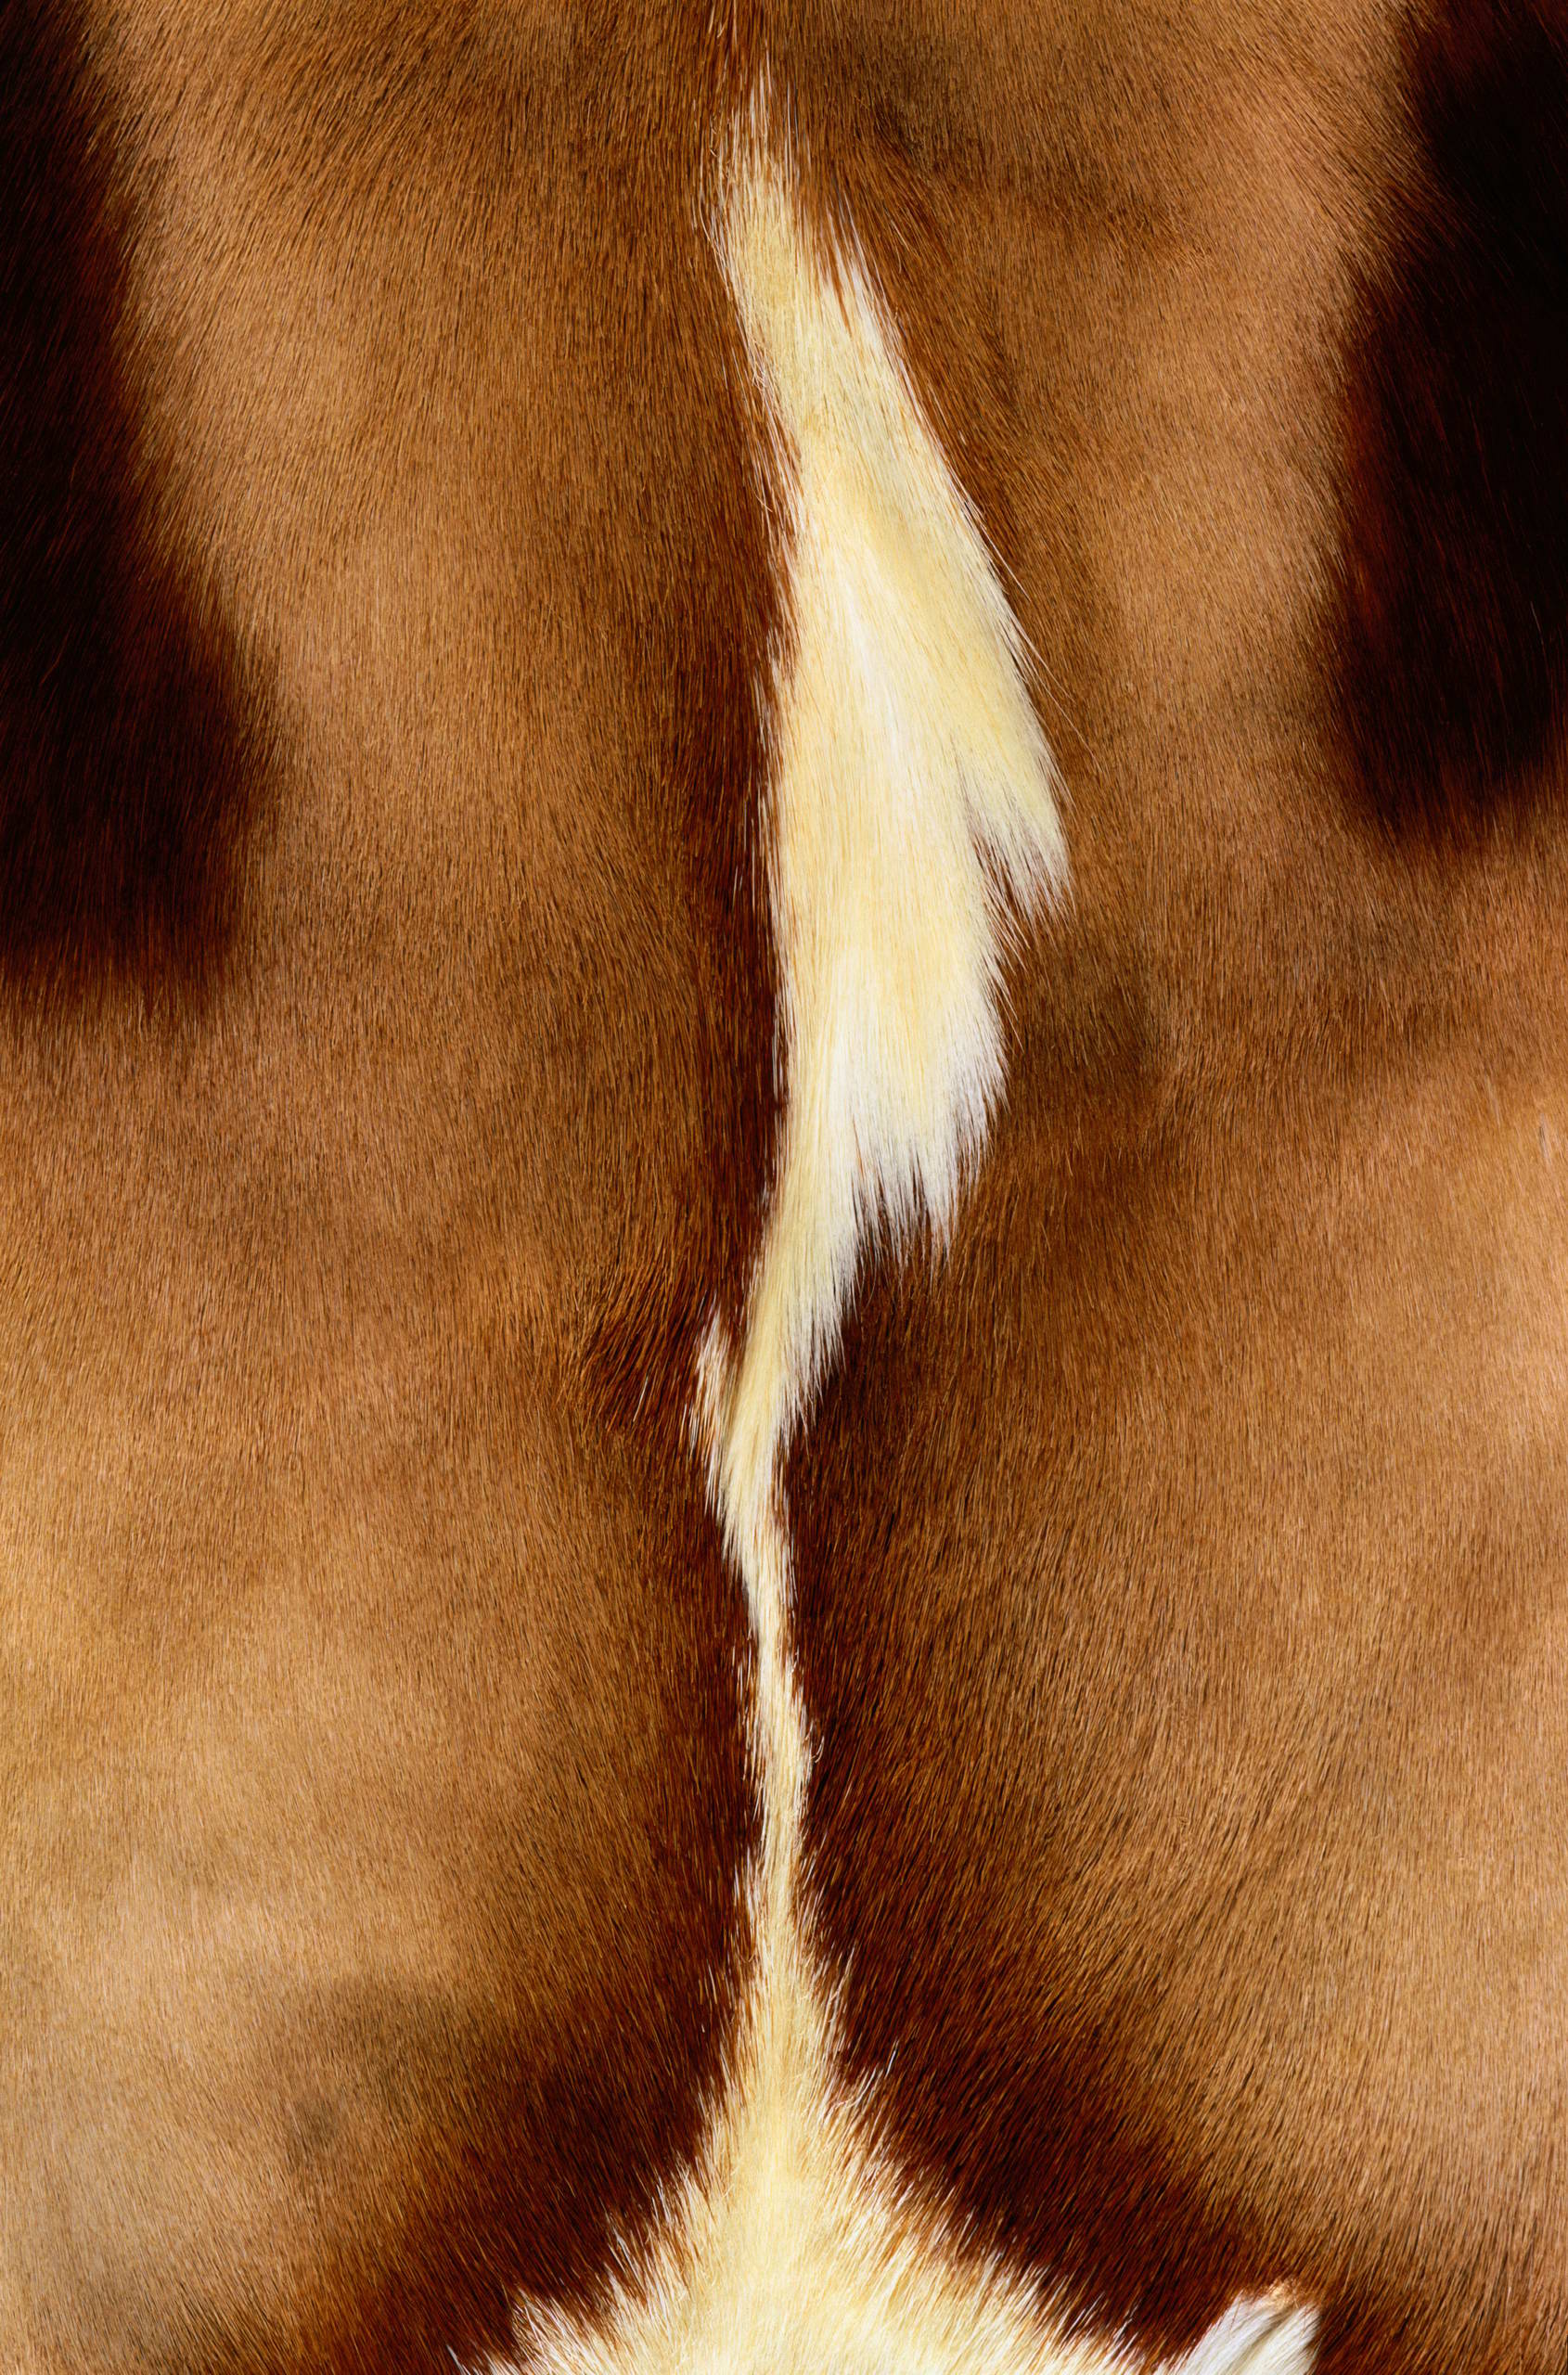  , skin , texture fur, fur texture background, background